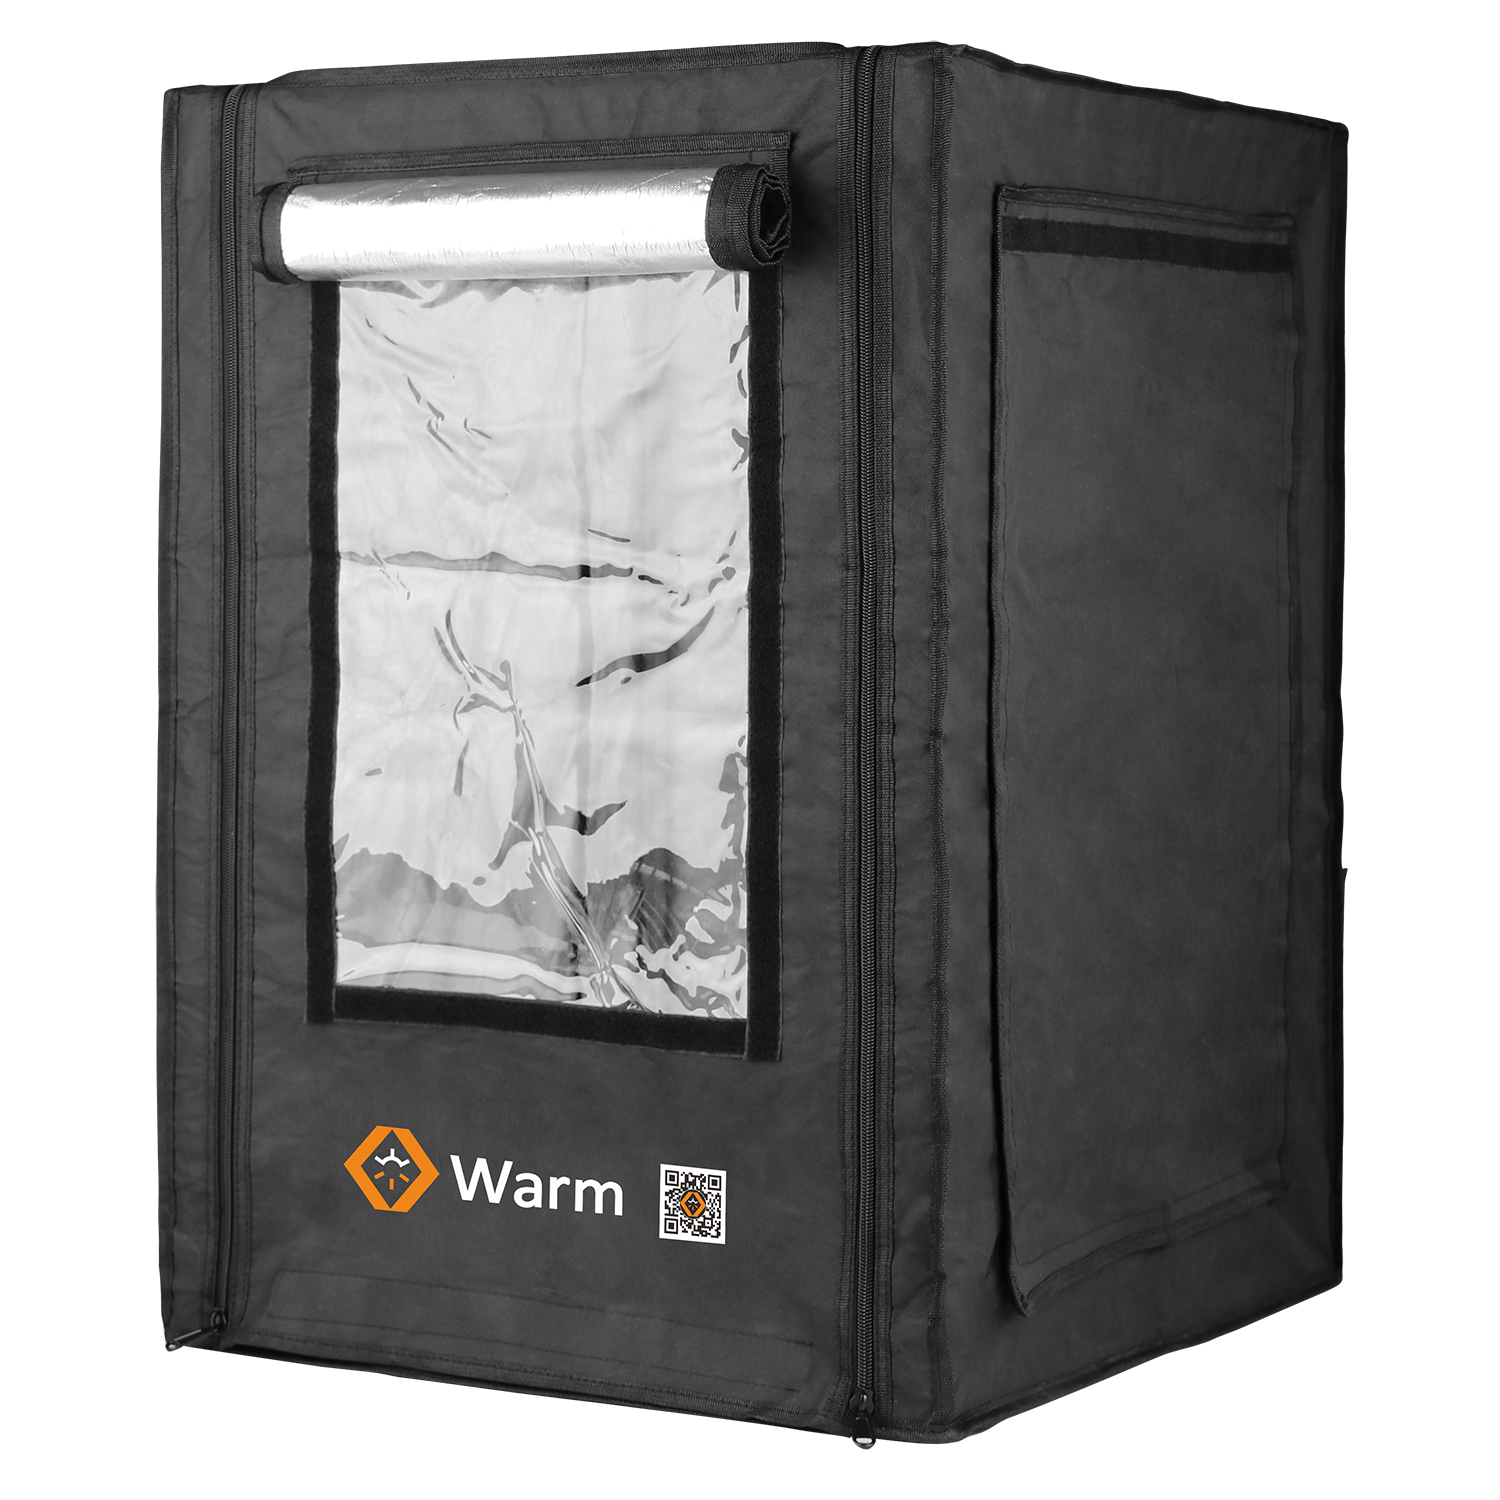 Boîtier d'imprimante 3D Pro, garde au chaud, ignifuge, couverture complète et studio, Warm Pro
